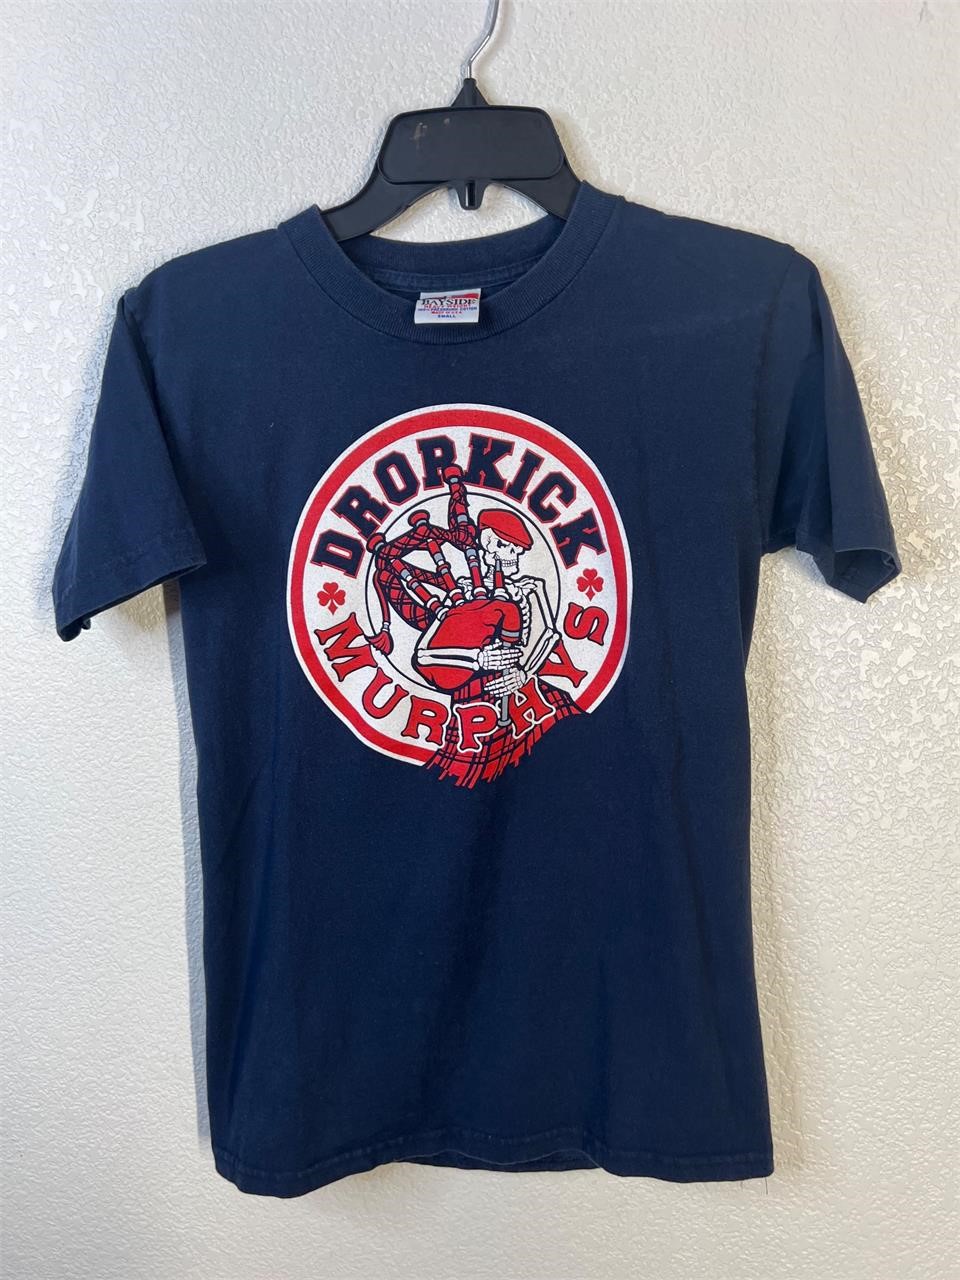 Dropkick Murphy Band Shirt Small